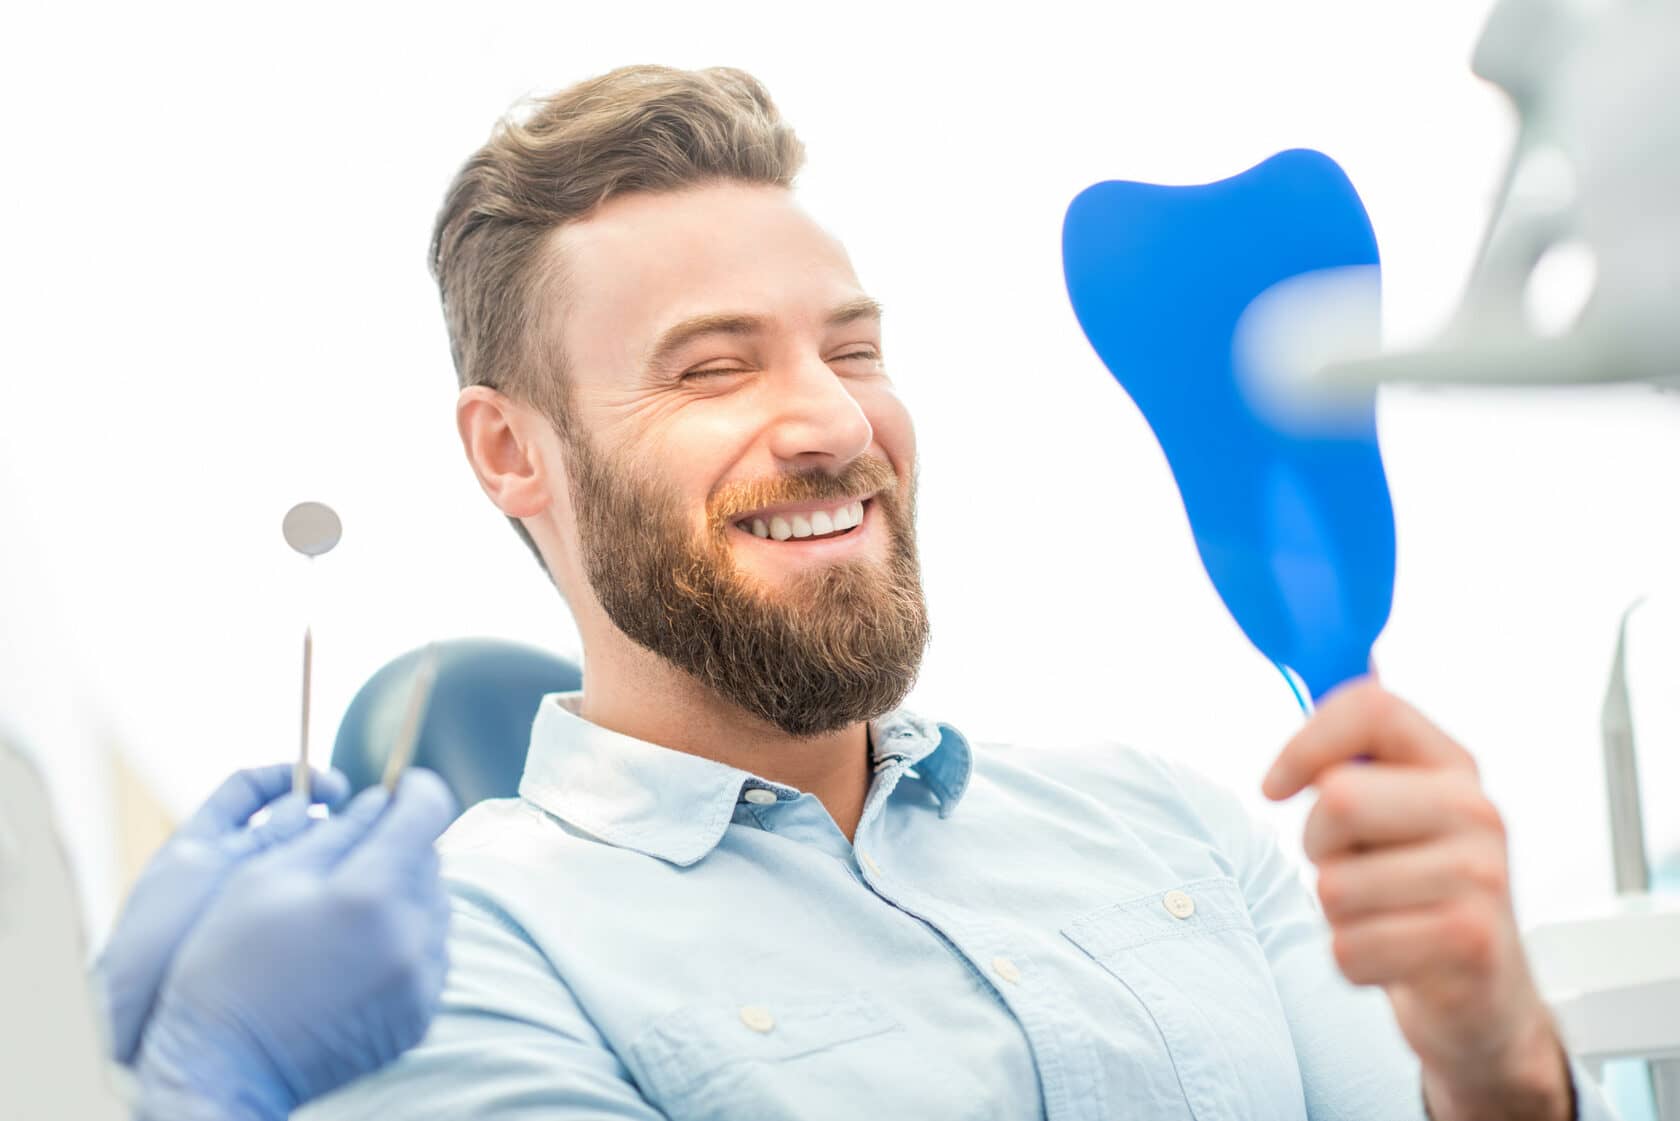 Сегодня гигиеническая чистка полости рта с использованием ультразвукового оборудования, аппарата AirFlow и покрытием зубов фторлаком для Вас всего 3000 руб